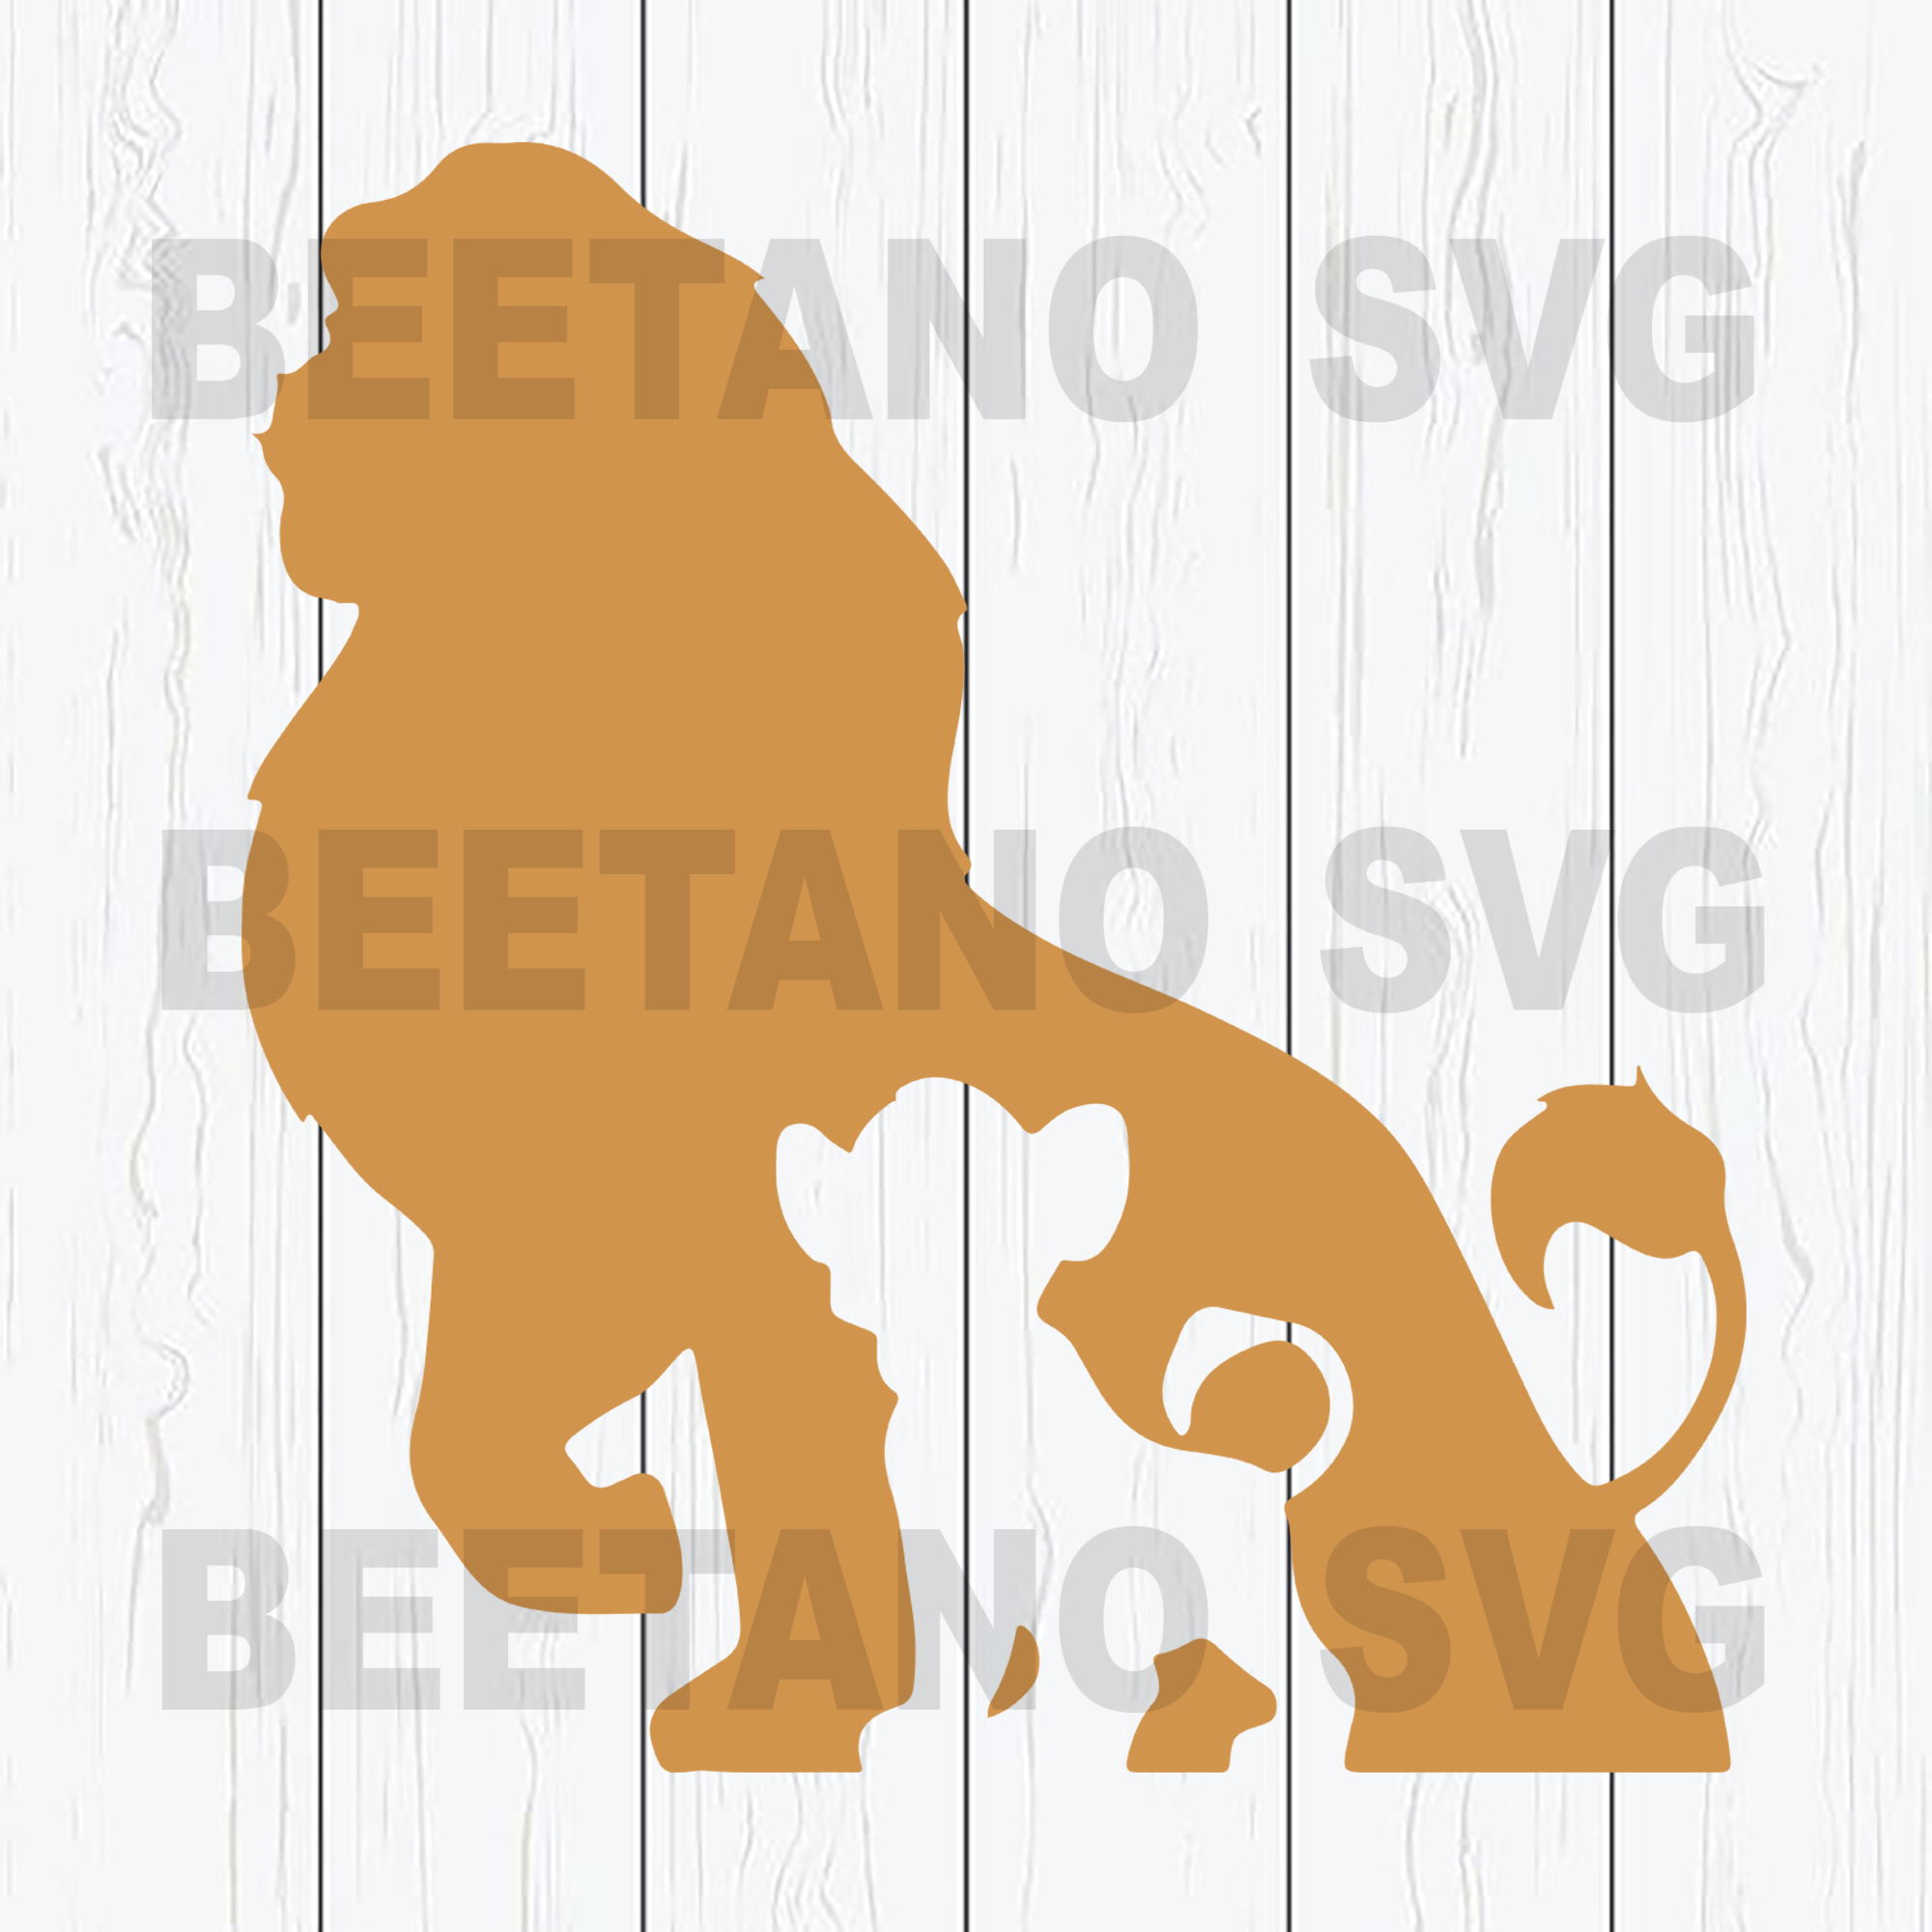 Free Free Lion King Disney Svg 832 SVG PNG EPS DXF File